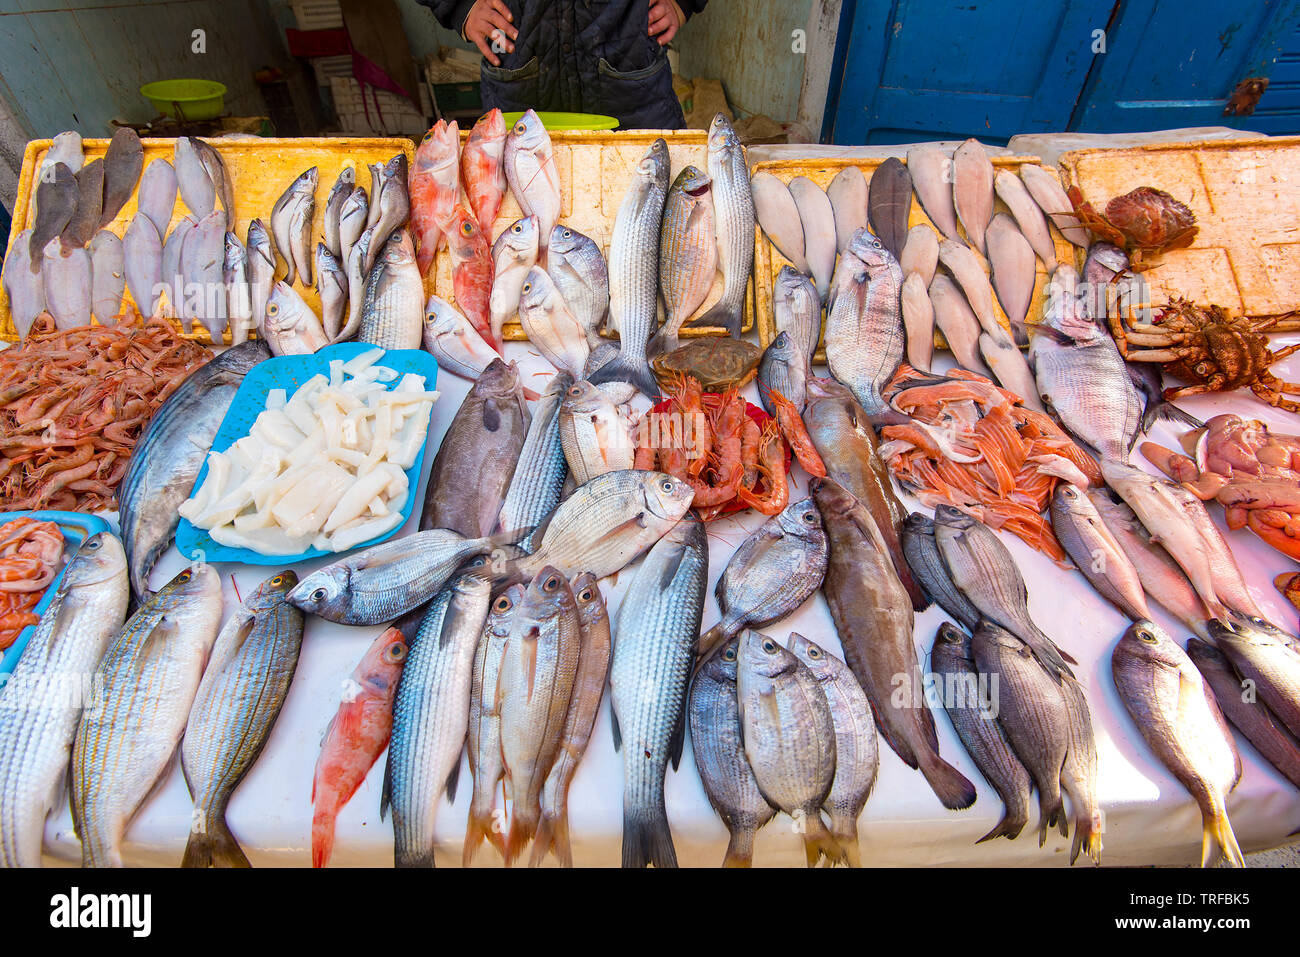 Verdadero mercado de pescado, marisco y pescado fresco del océano Atlántico en Marruecos Foto de stock